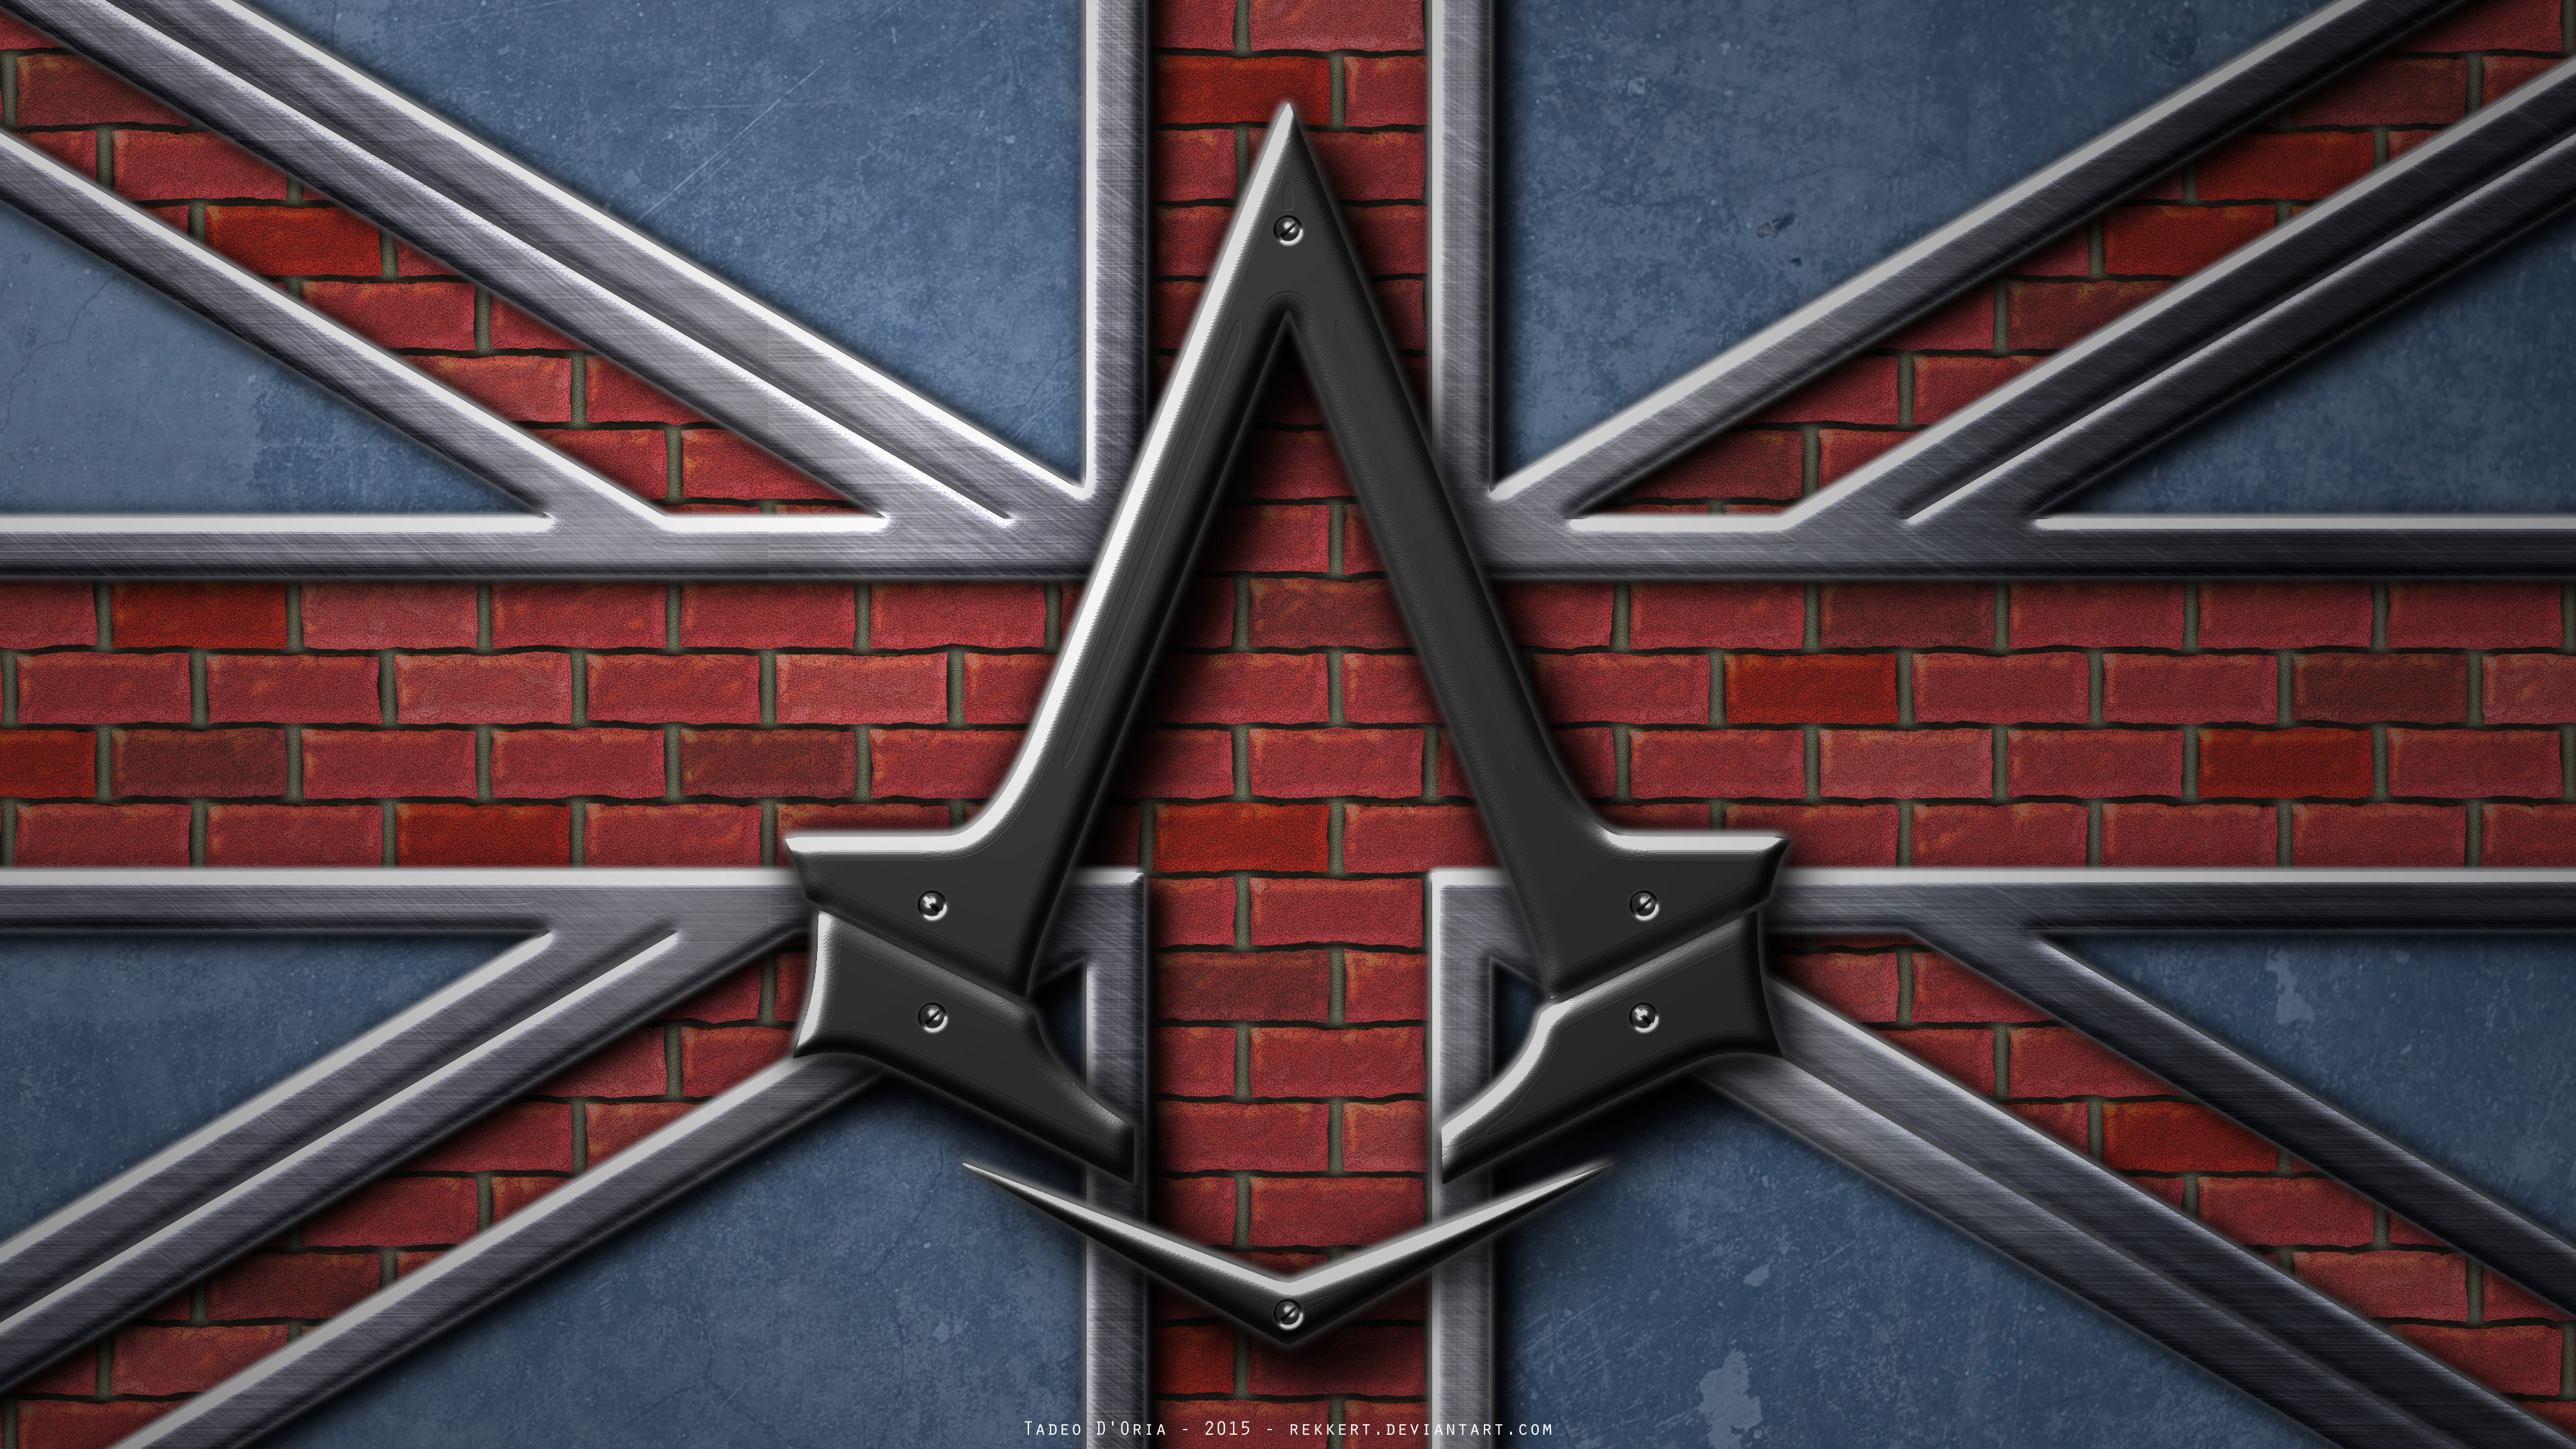 3840x2160 Assassins Creed Syndicate HD desktop wallpaper Widescreen